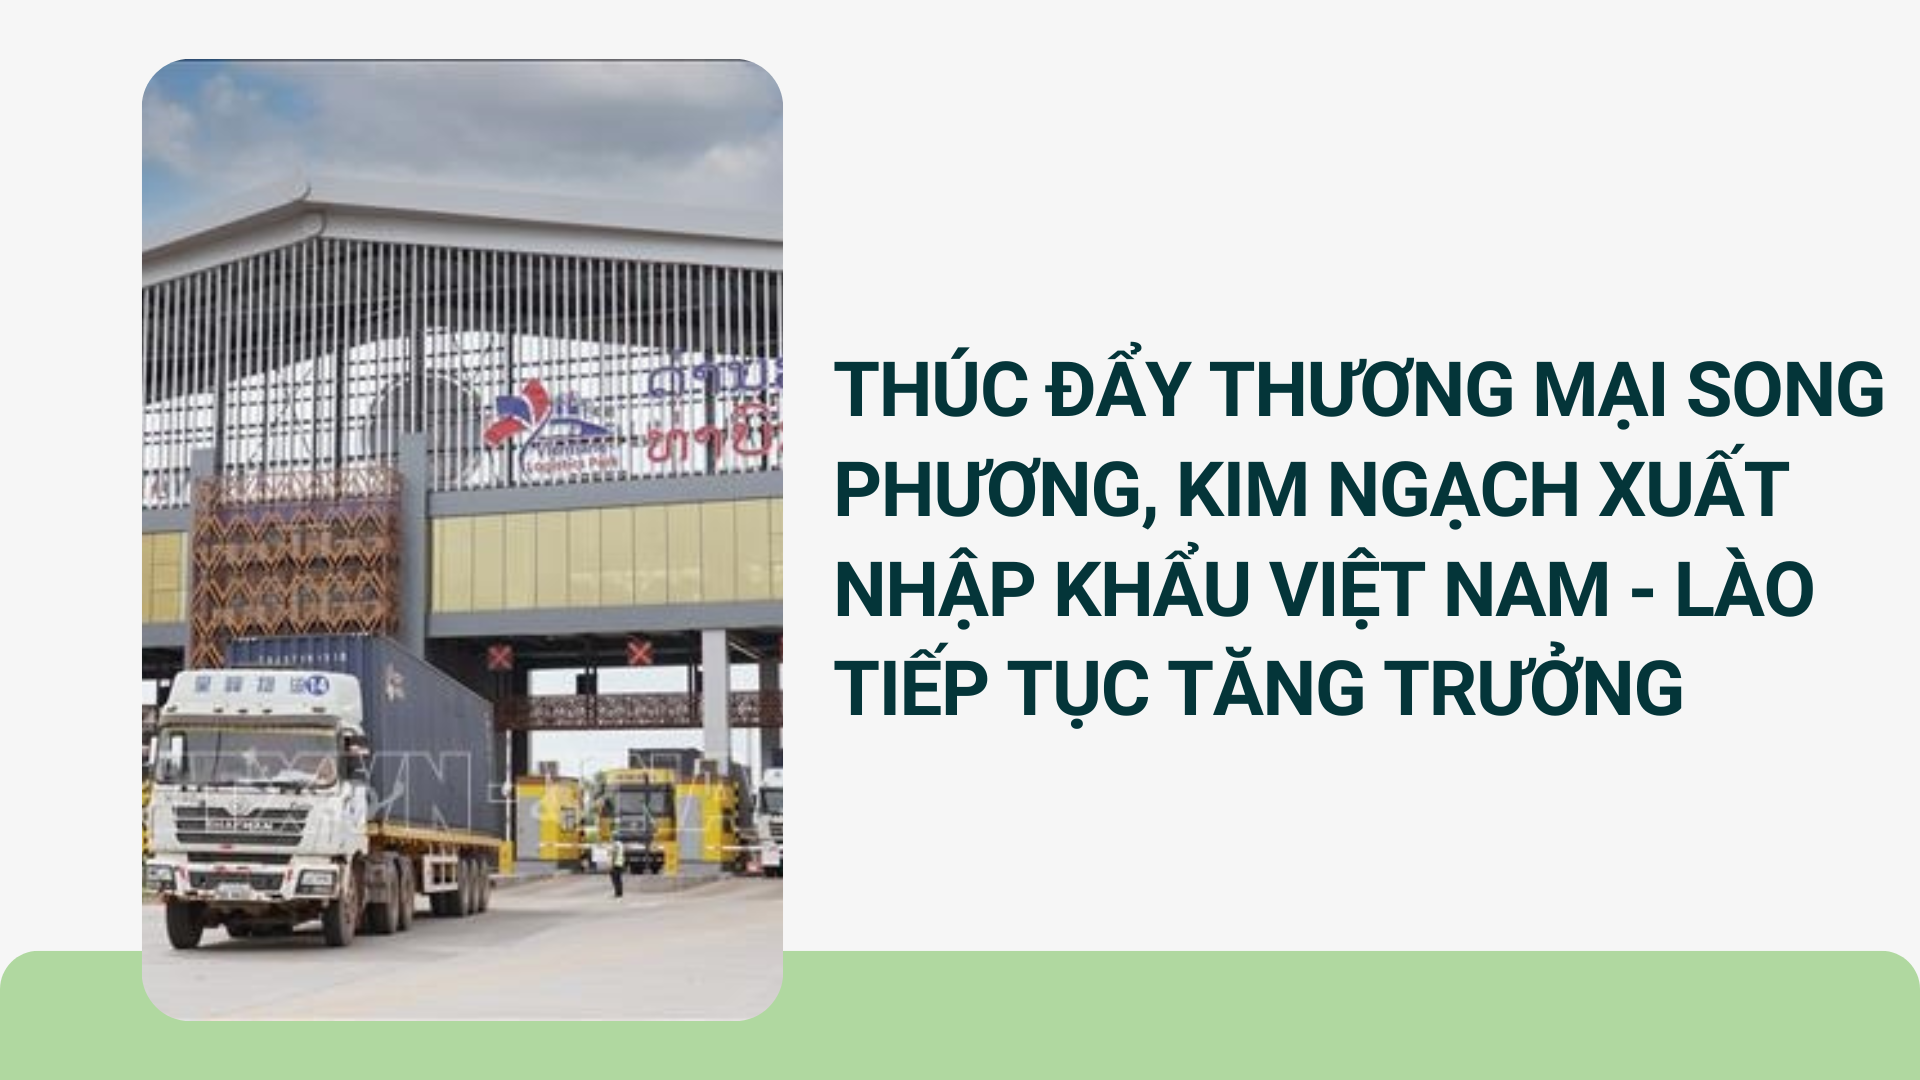 Thúc đẩy thương mại song phương, kim ngạch xuất nhập khẩu Việt Nam- Lào tiếp tục tăng trưởng